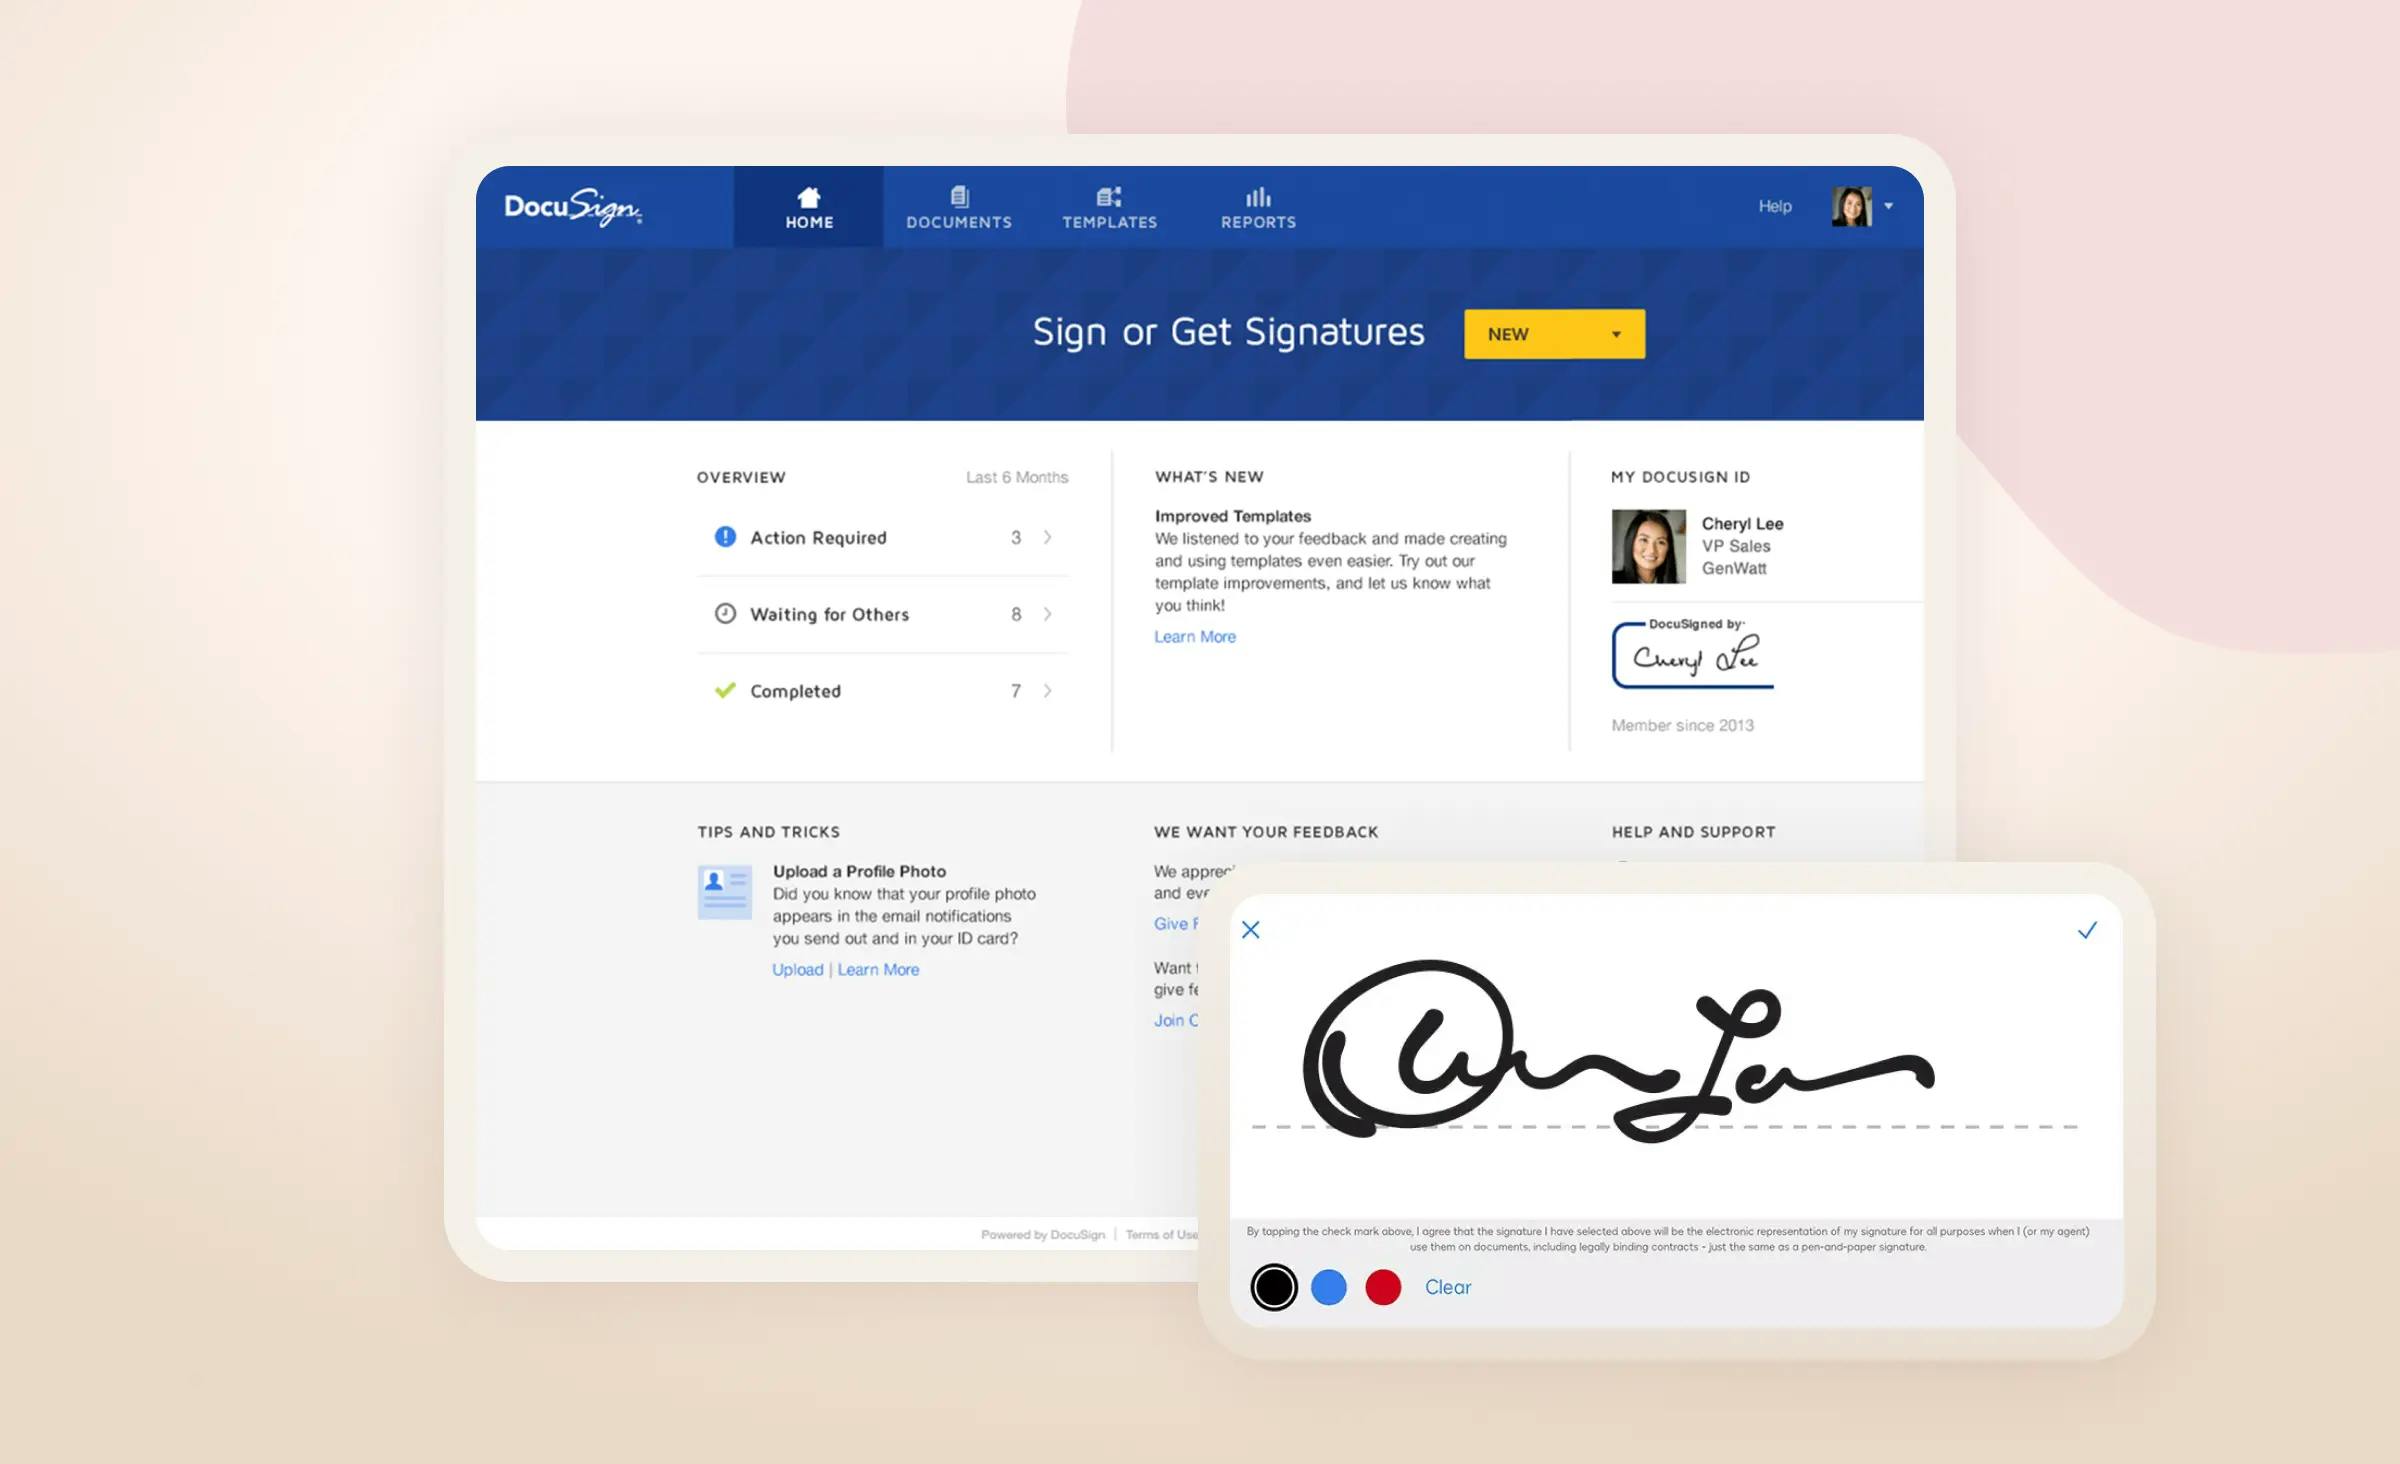 SaaS startup idea: e-signature service